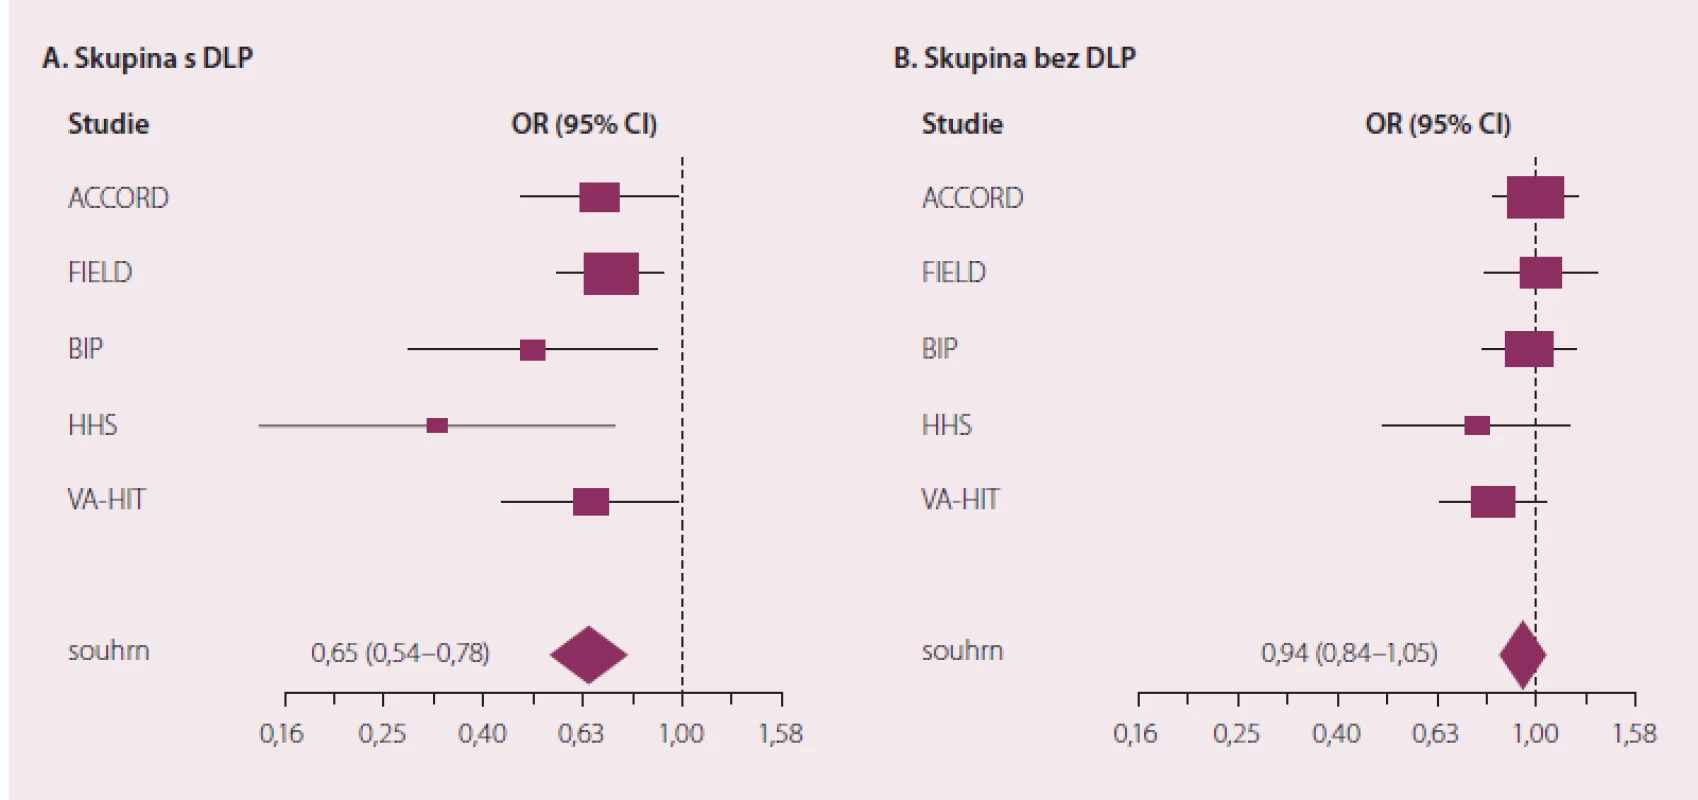 Vliv podávání fi brátů na výskyt vaskulárních příhod u osob se smíšenou DLP (A) a osob bez DLP (B).